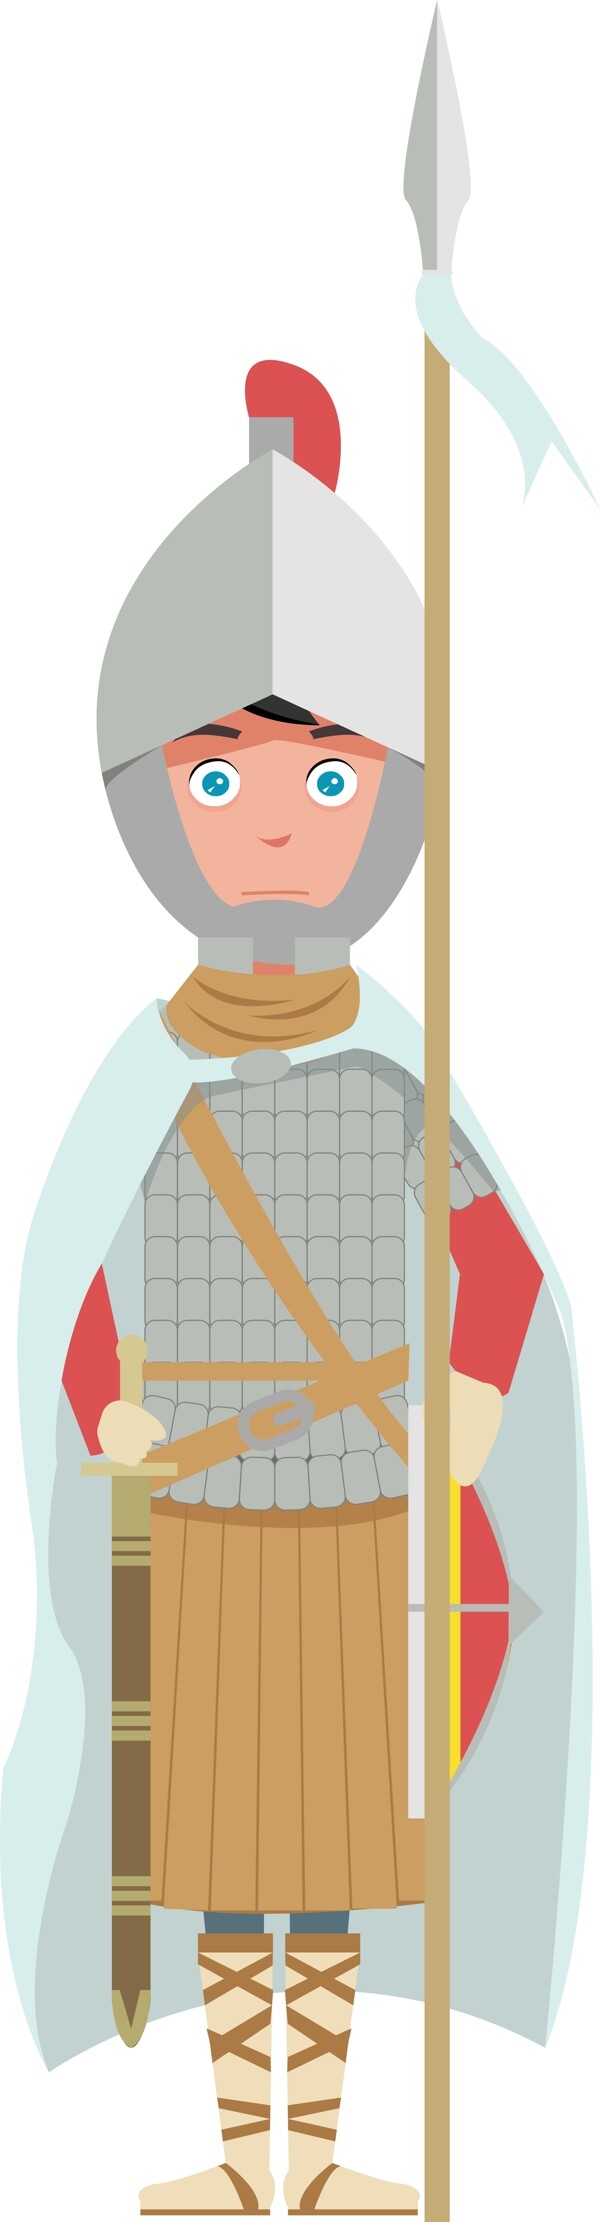 中世纪欧洲骑士服装